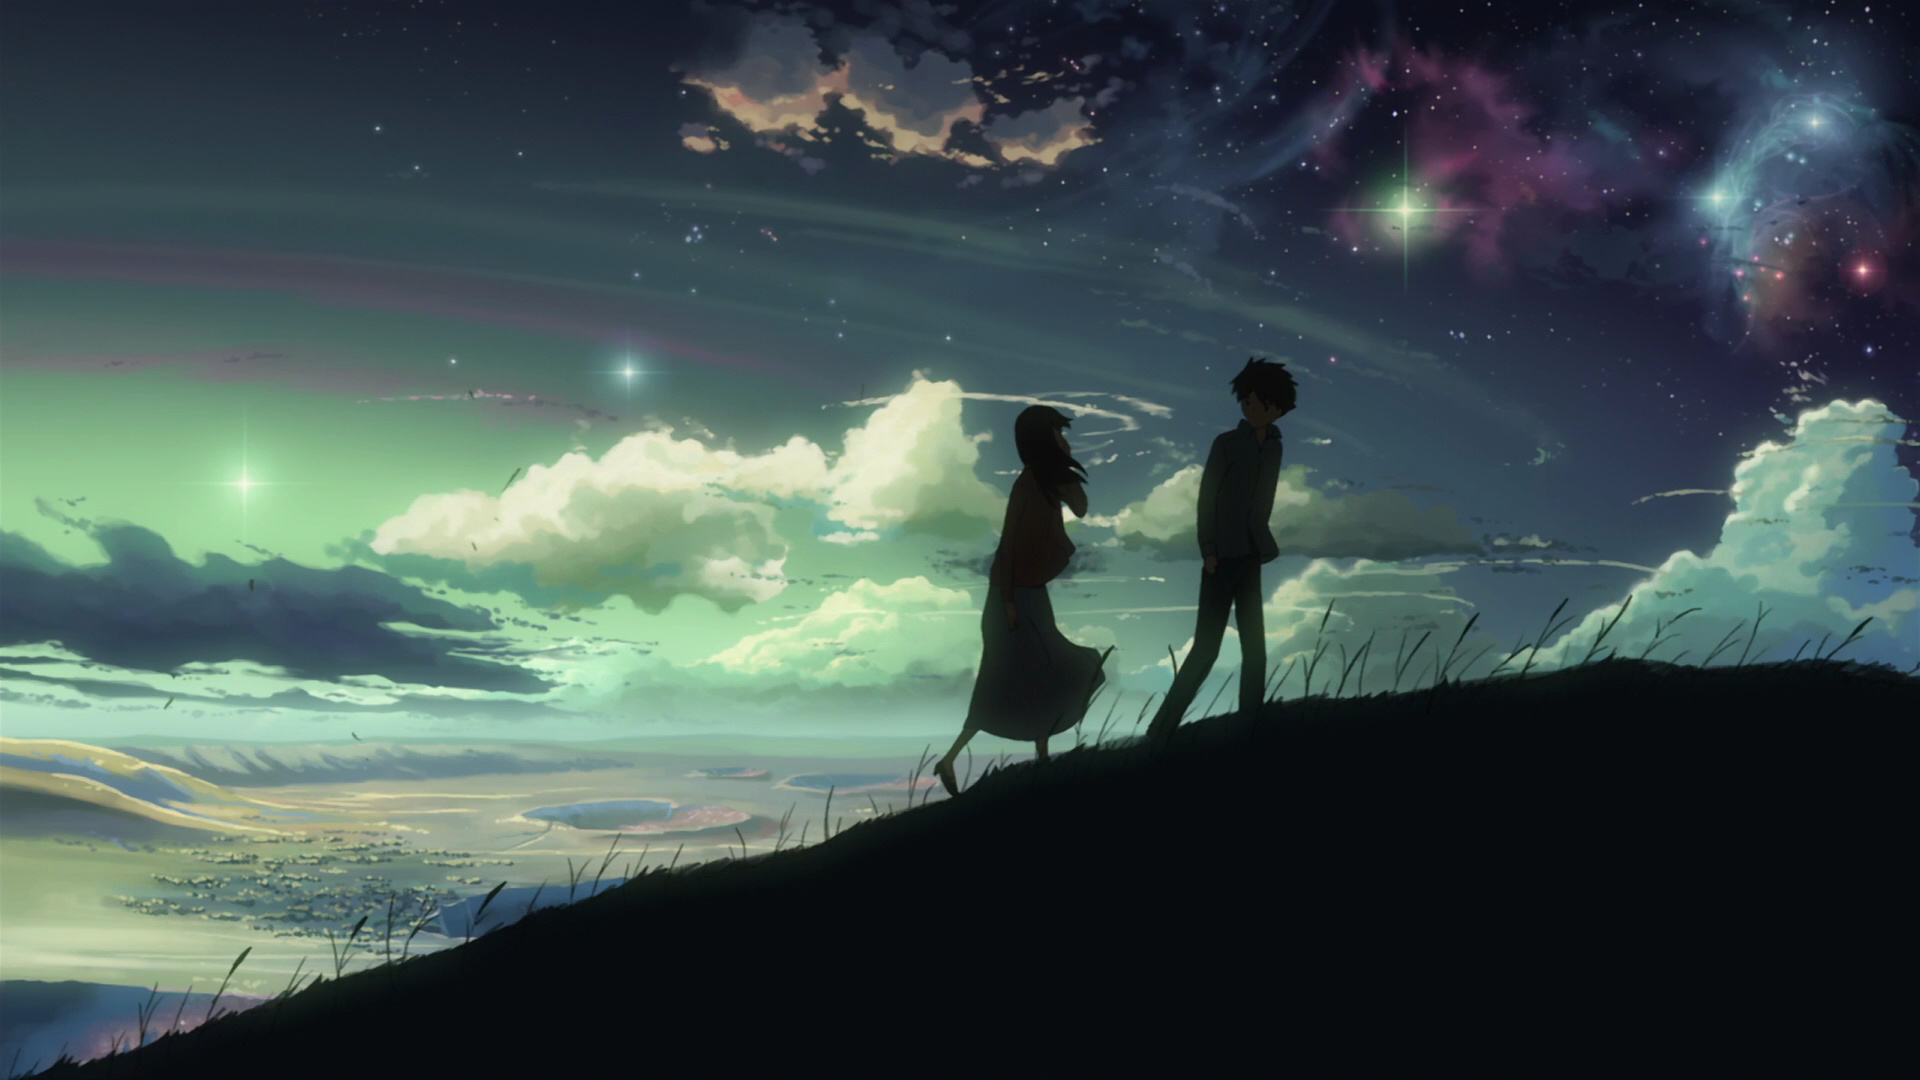 Makoto Shinkai Anime, Free Download, Shinjuku Japan, Garden of Words, 1920x1080 Full HD Desktop